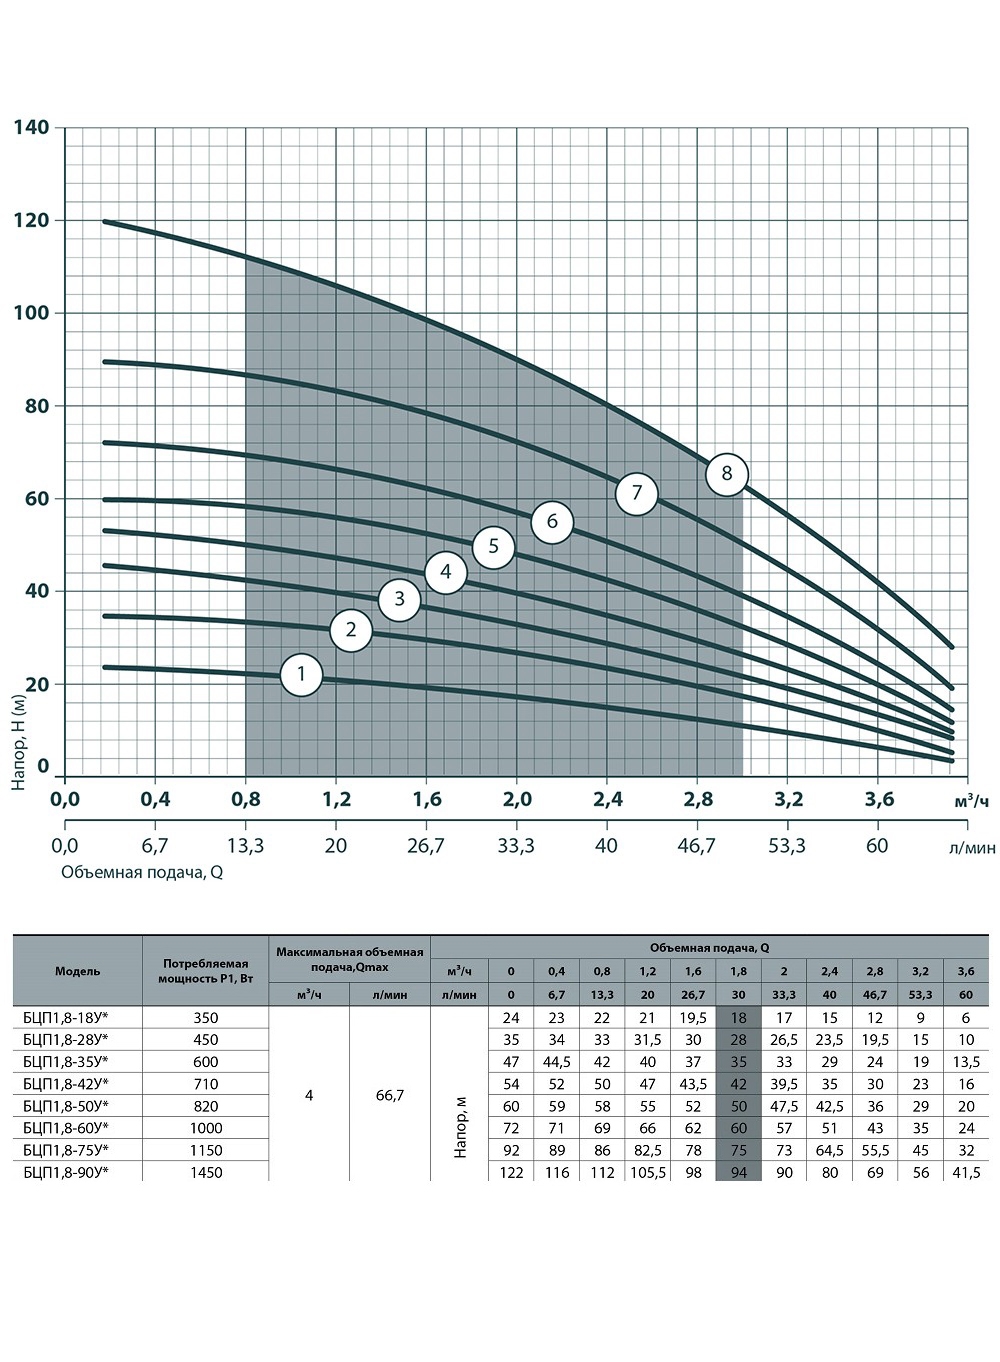 Насоси+Обладнання БЦП 1,8-28У (10 м кабеля) Діаграма продуктивності